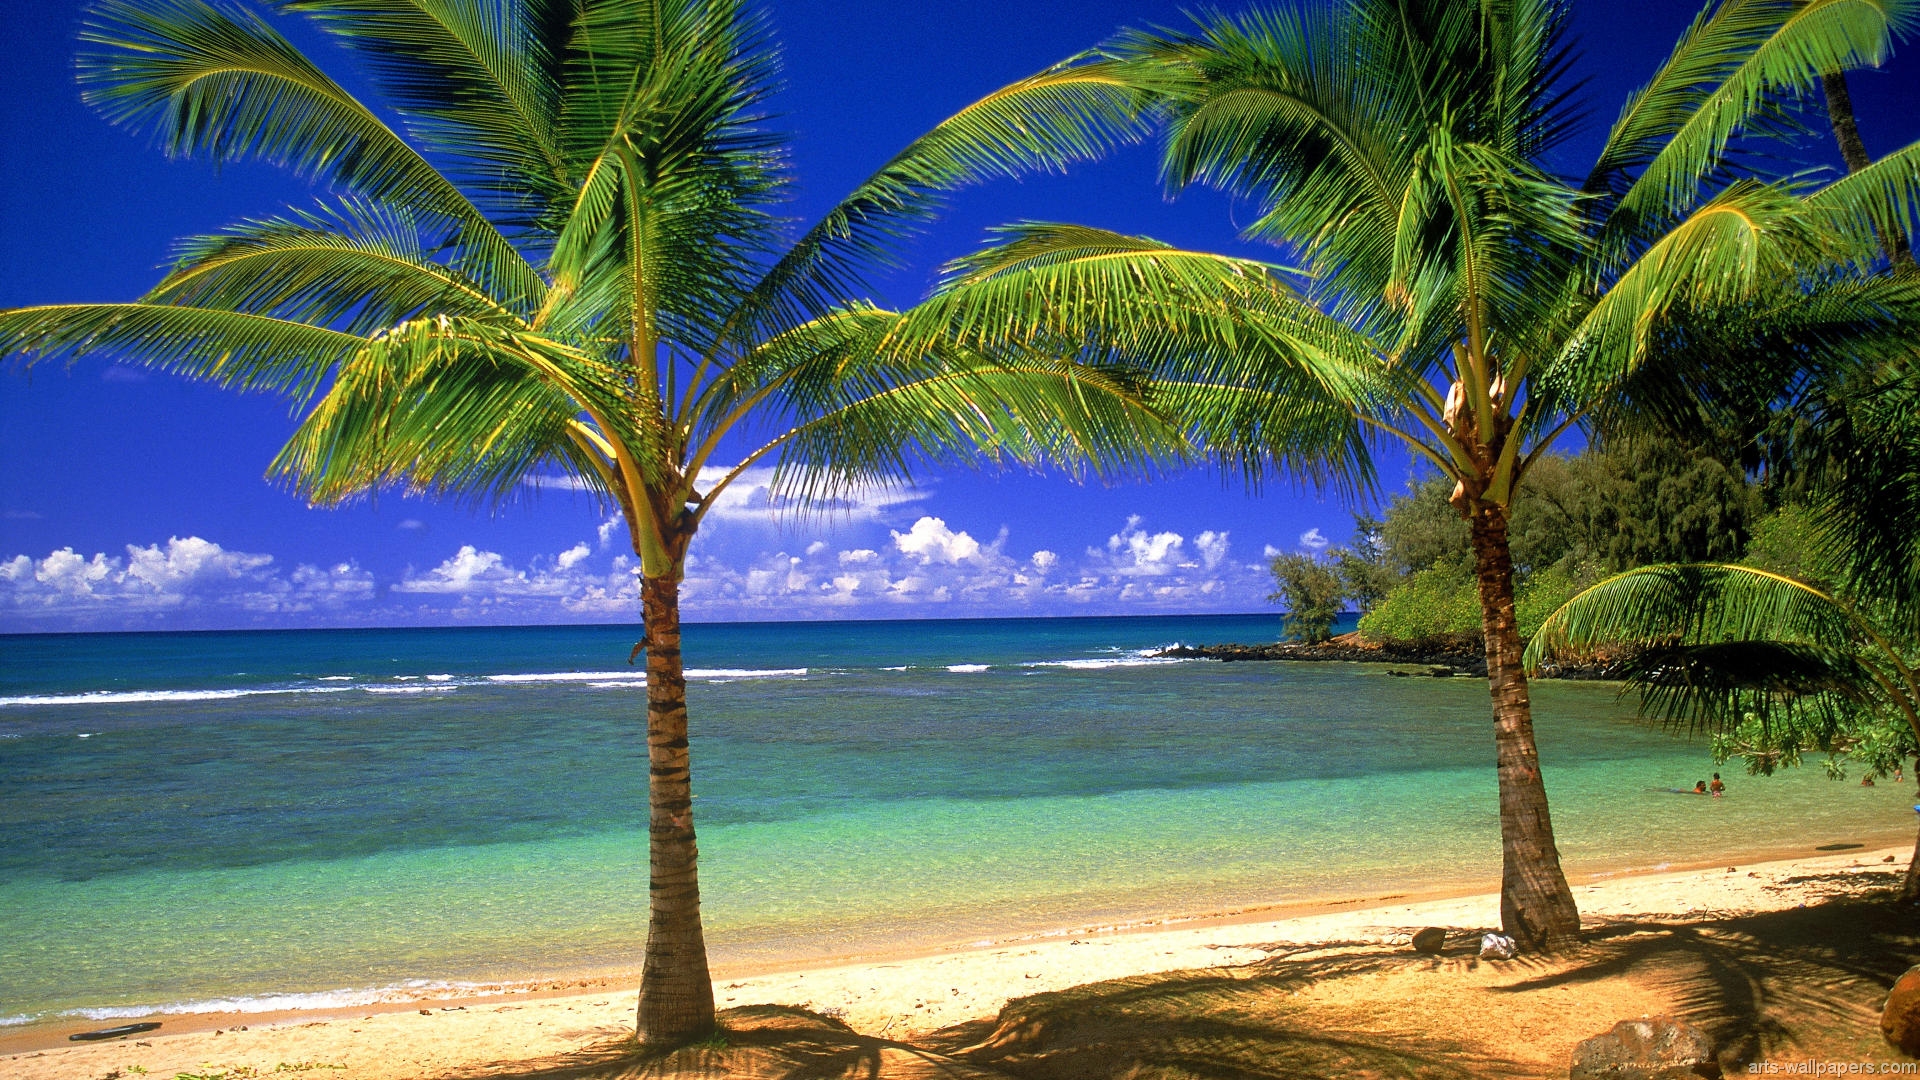 Tropical Paradise Wallpaper Hawaii Maldives Tahiti Islands Beach